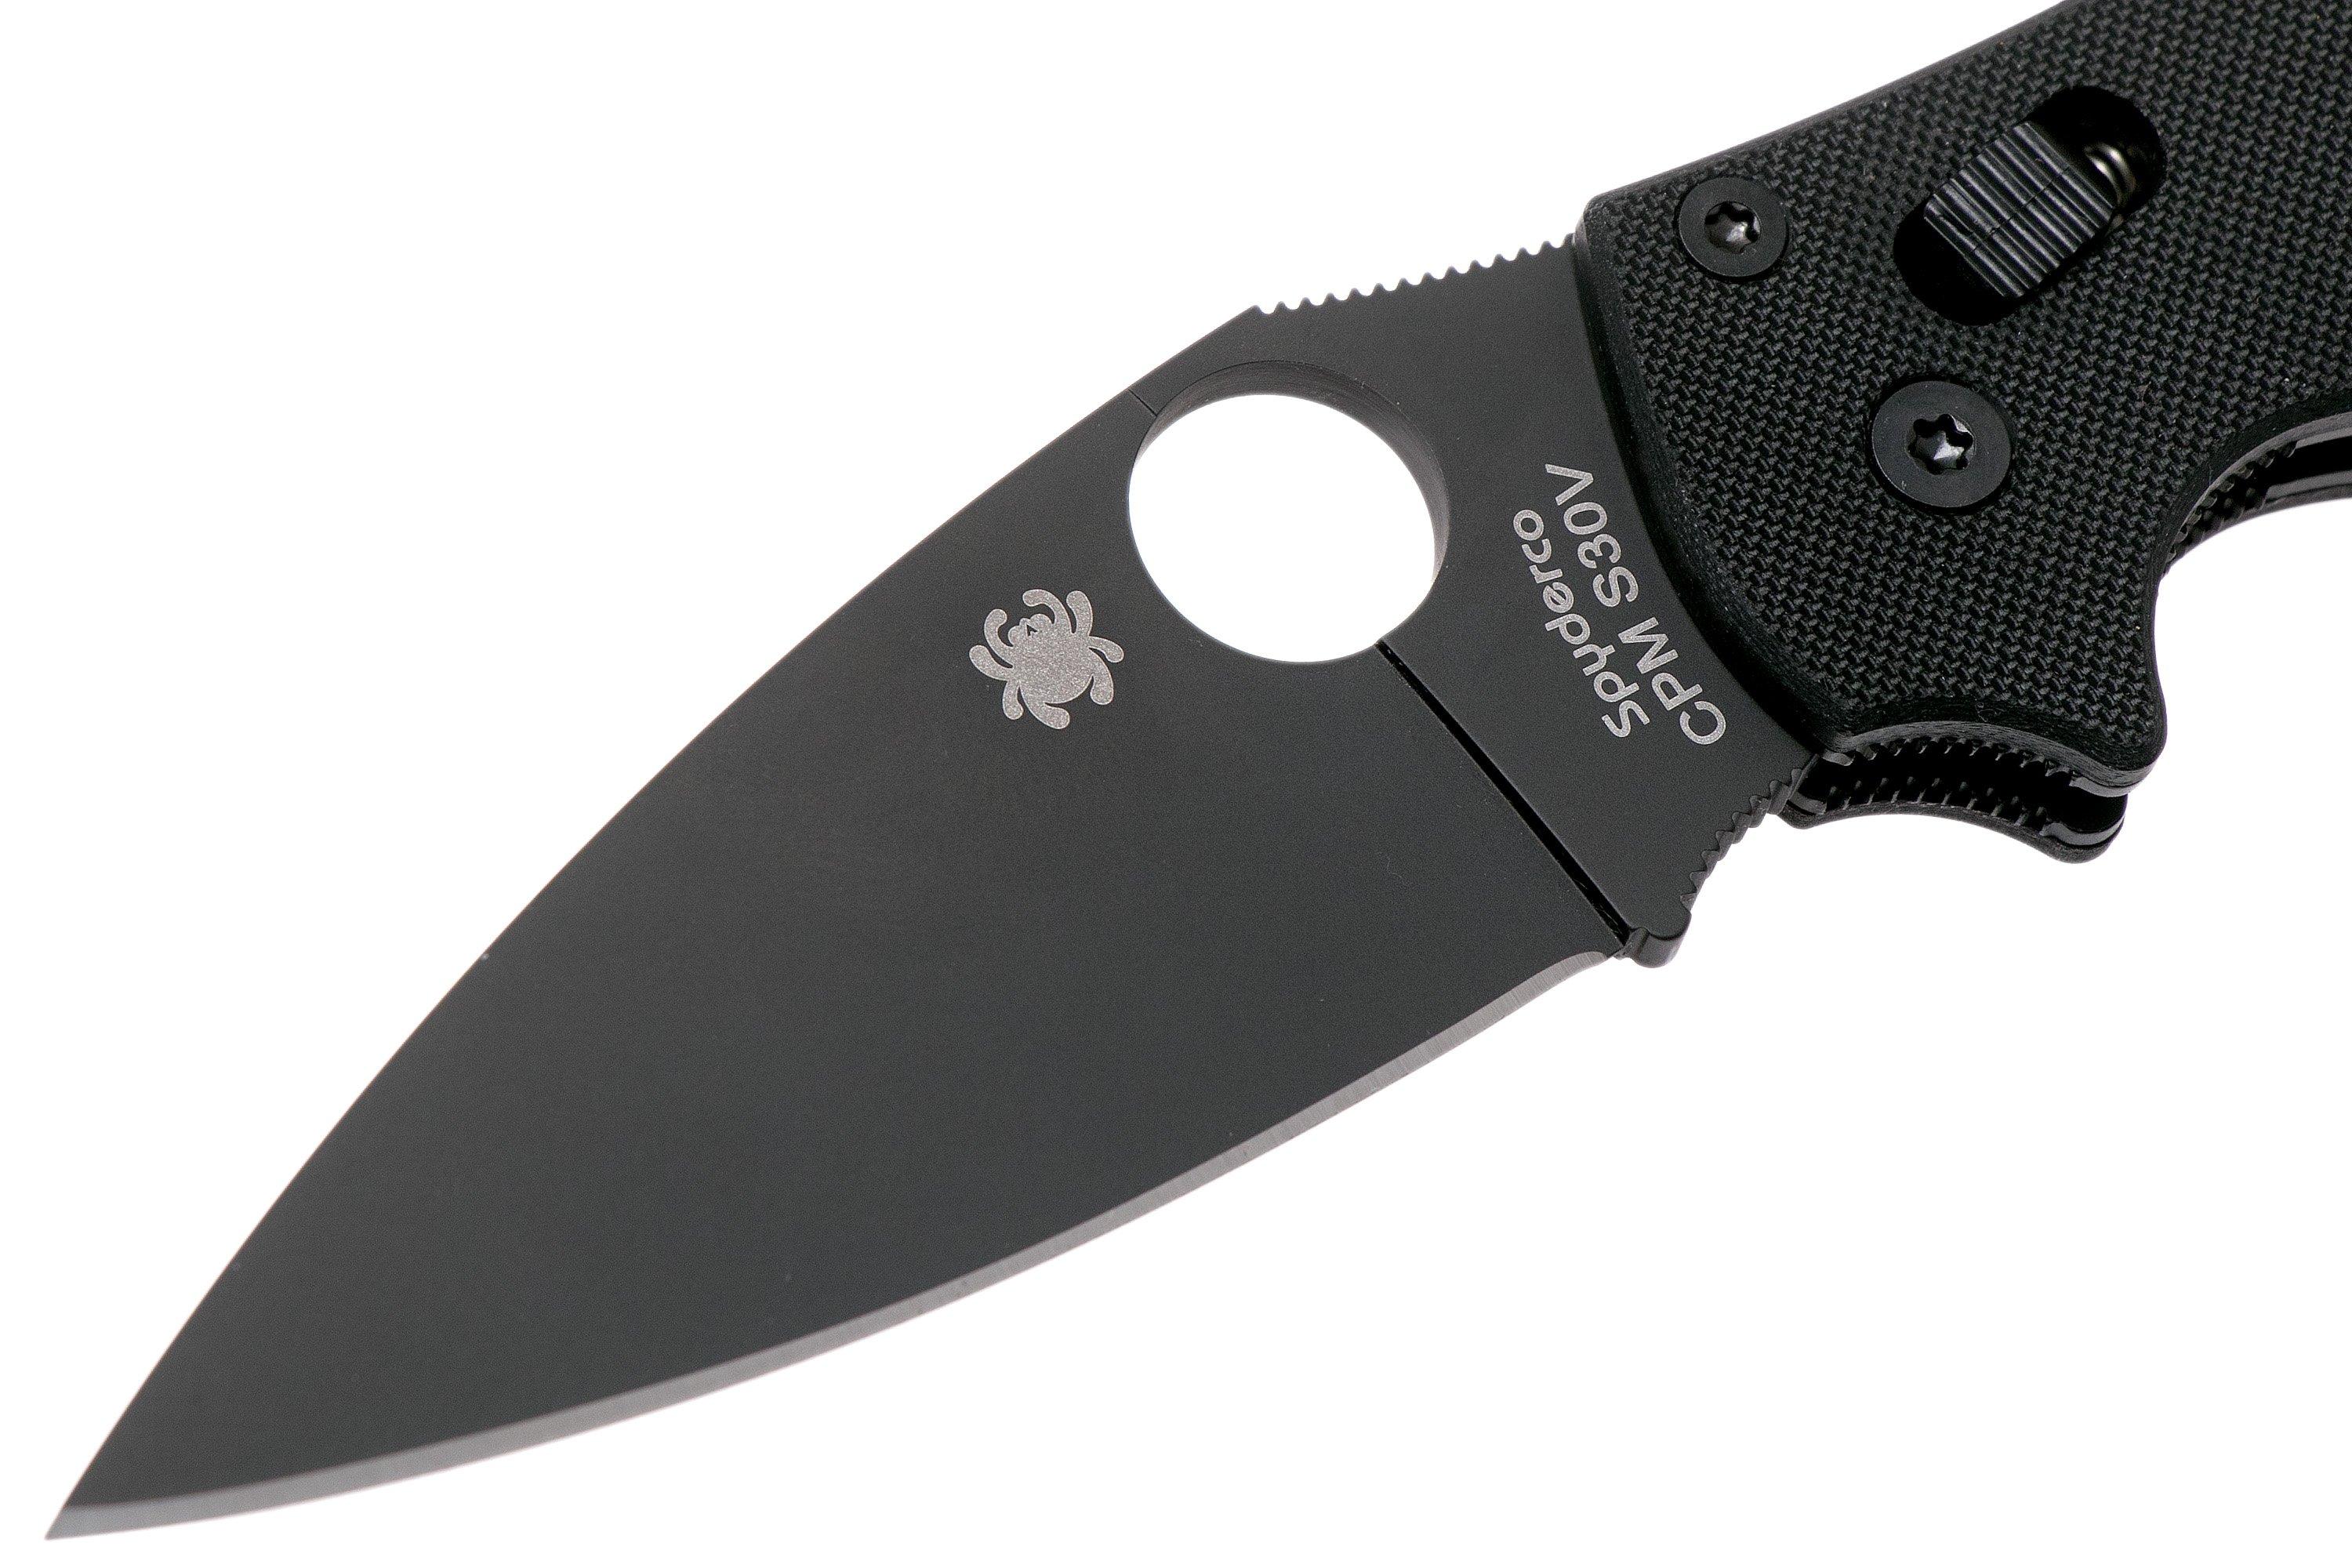 Spyderco Manix 2 Black C101GPBBK2 pocket knife | Advantageously ...